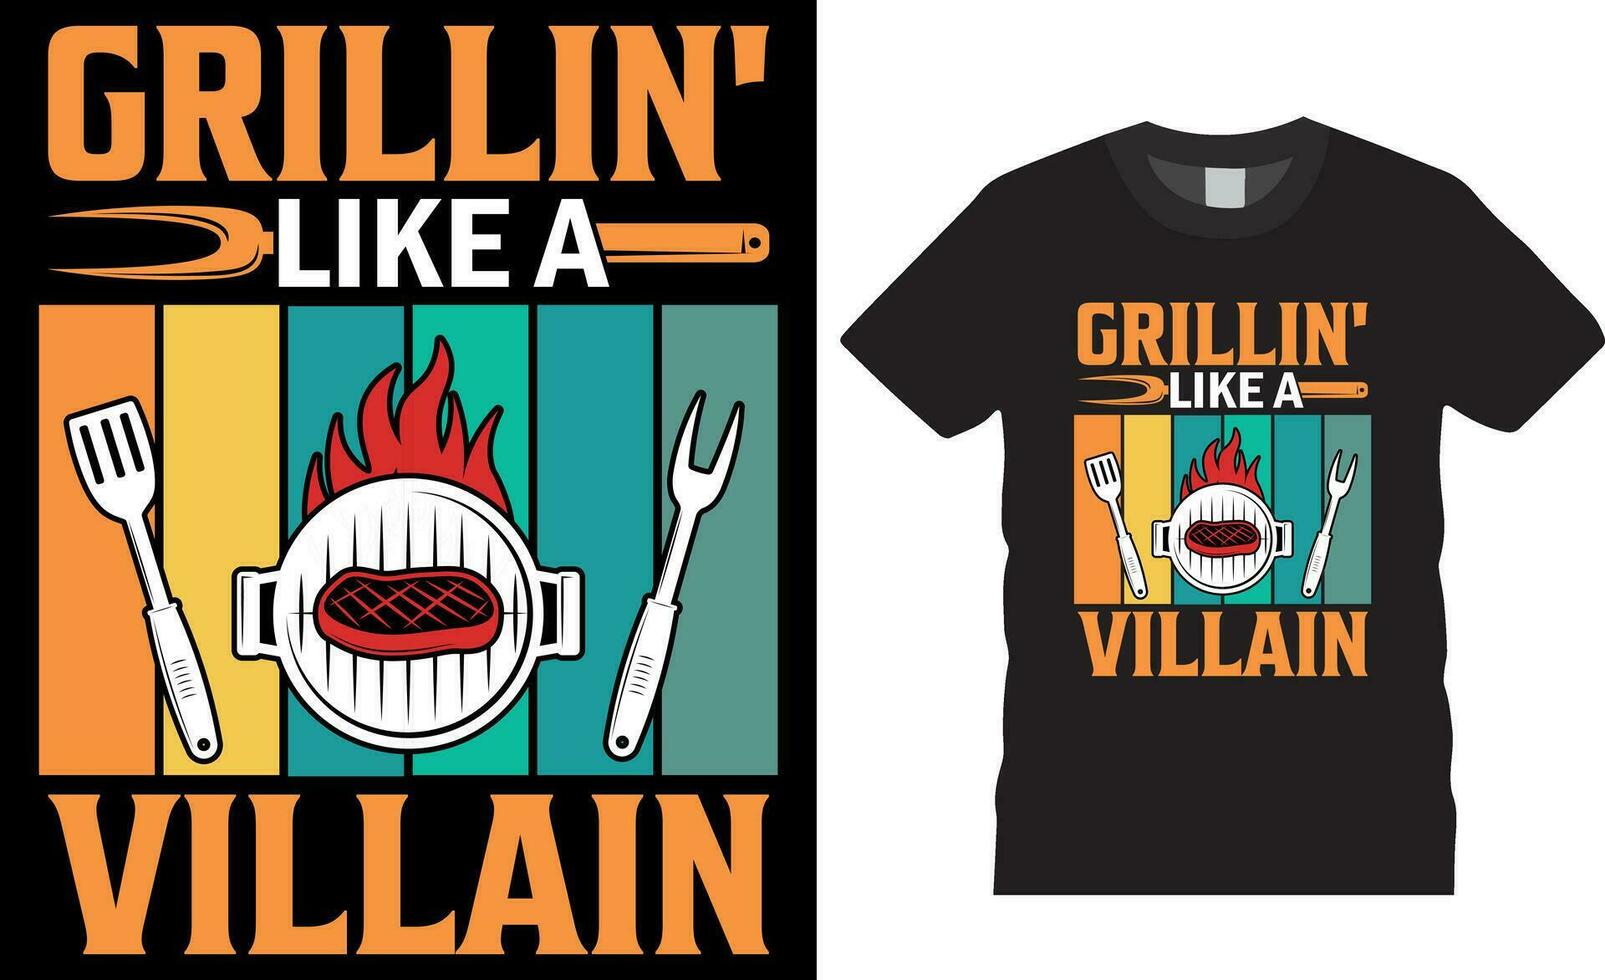 Grillen' mögen ein Schurke komisch Grillparty Grill Grill Herren T-Shirt Design Vektor template.grilling' mögen ein Schurke